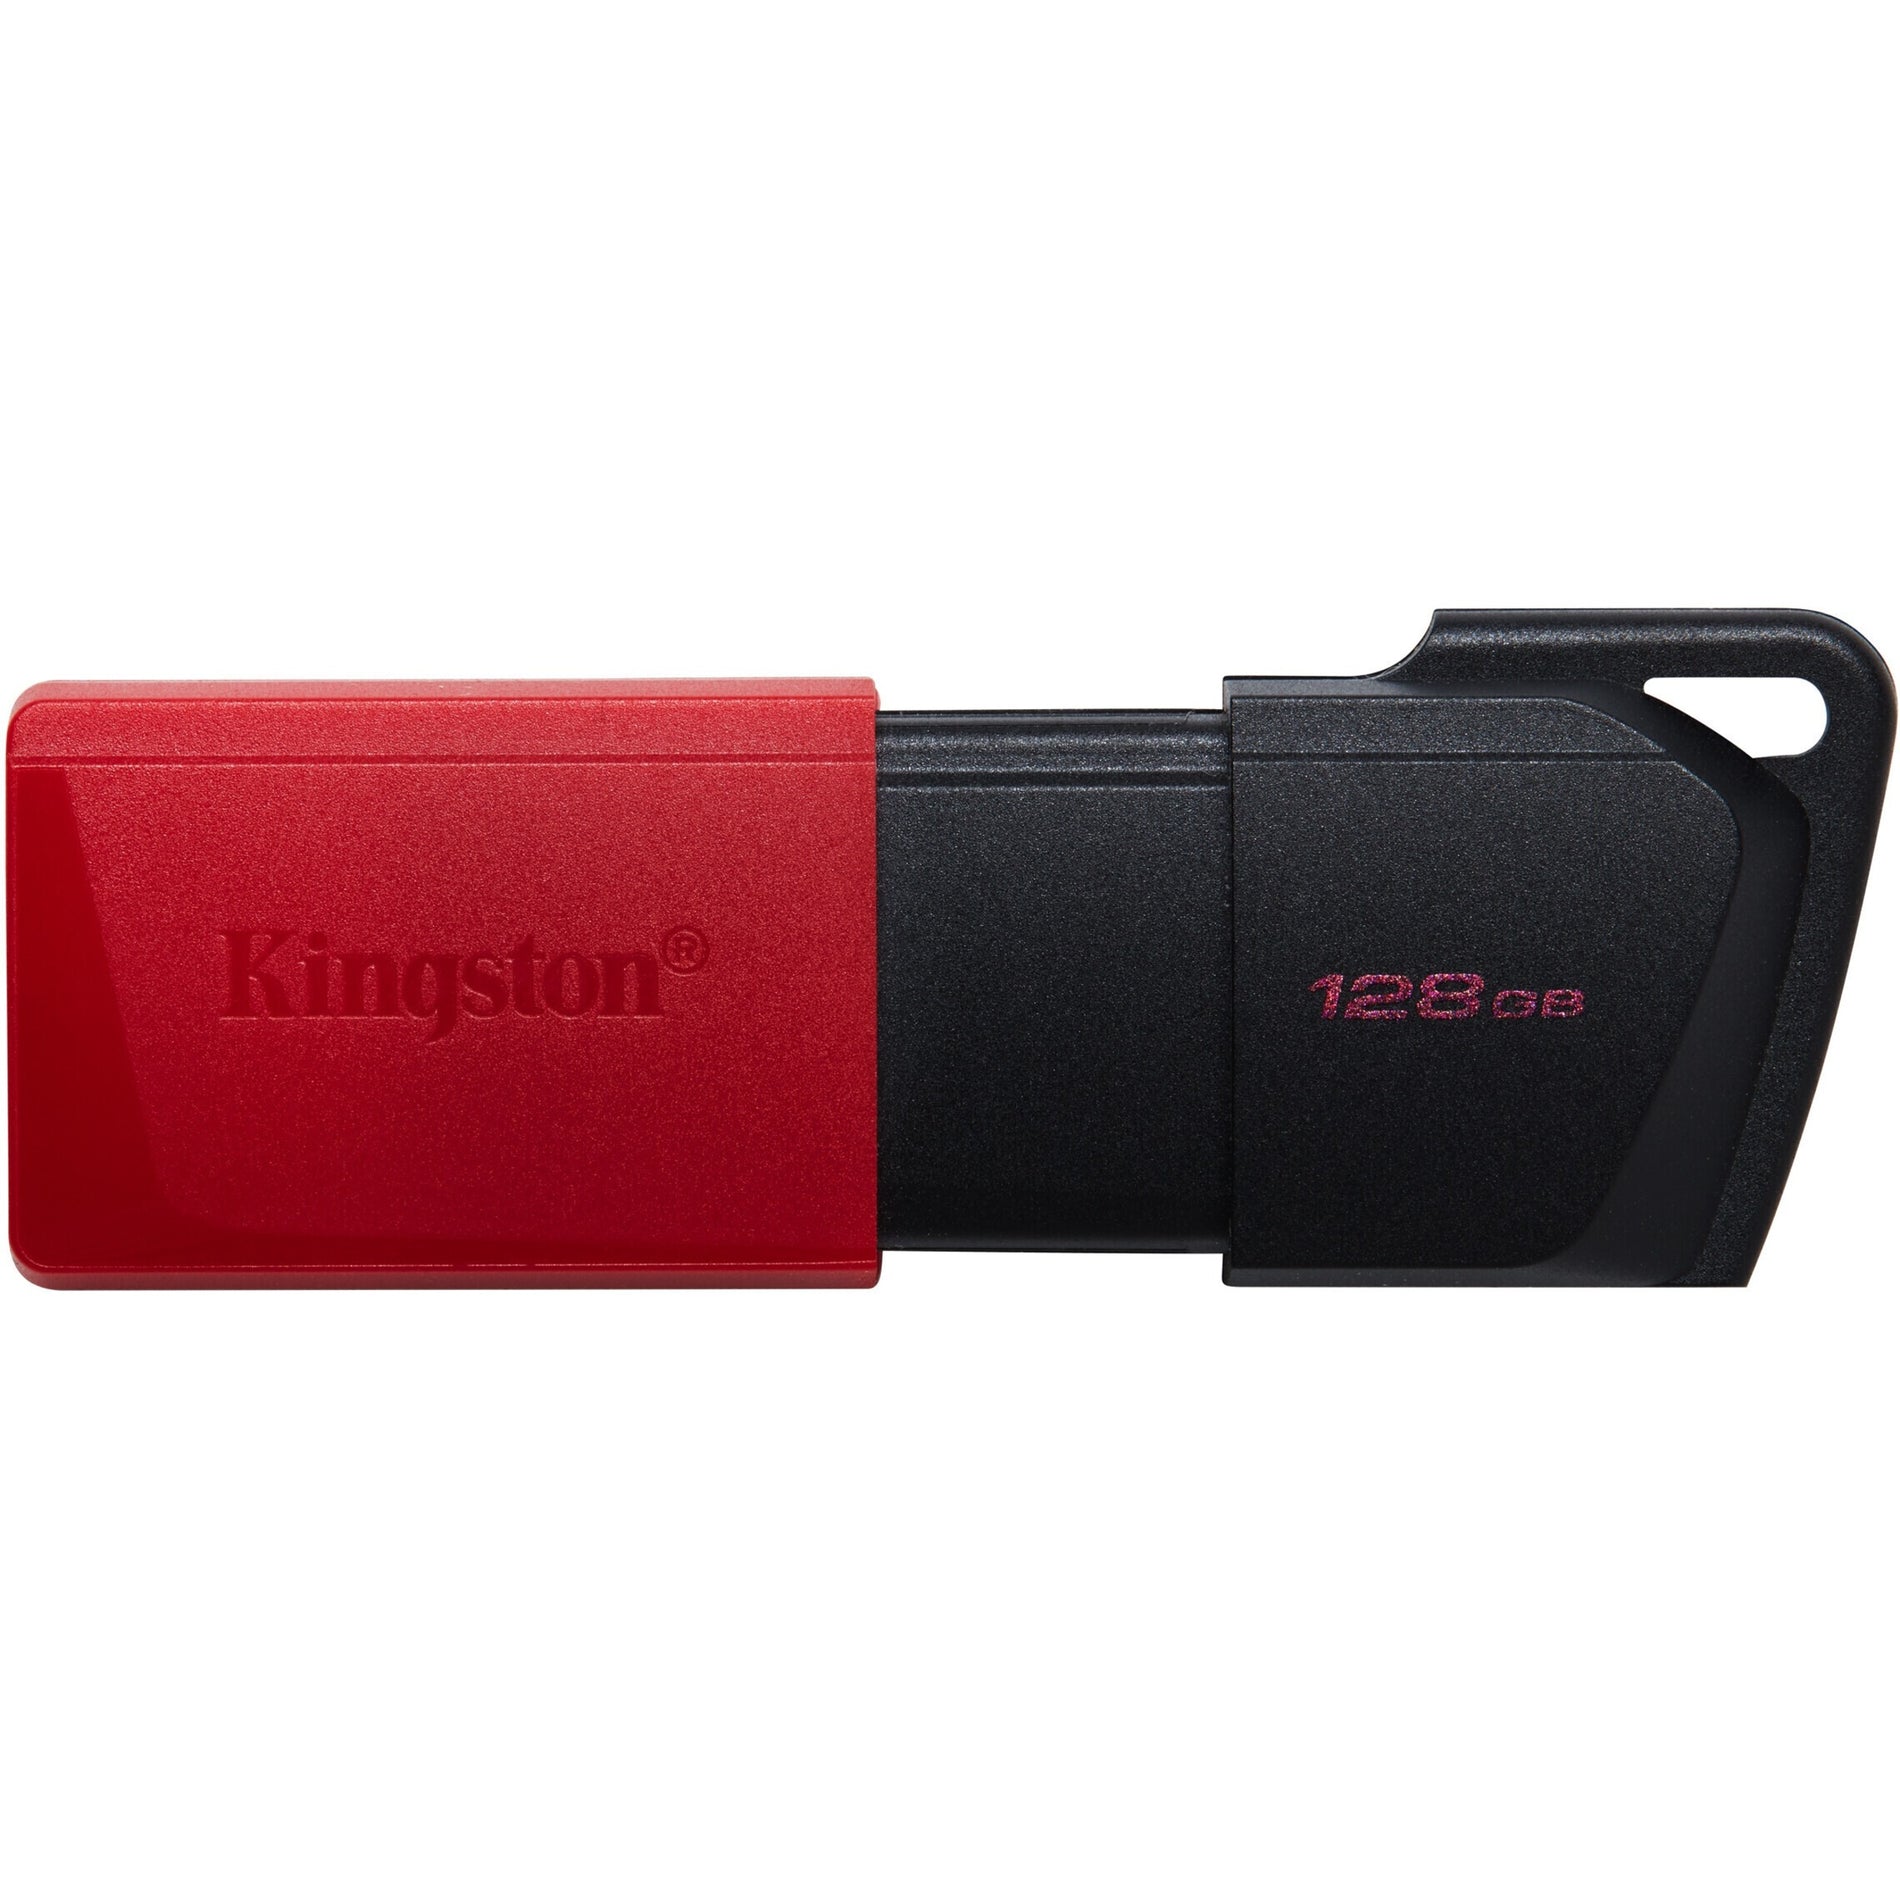 Kingston DTXM/128GB DataTraveler Exodia M Unidad Flash USB 128GB Almacenamiento Ligero Tapa Deslizante Llavero Portátil